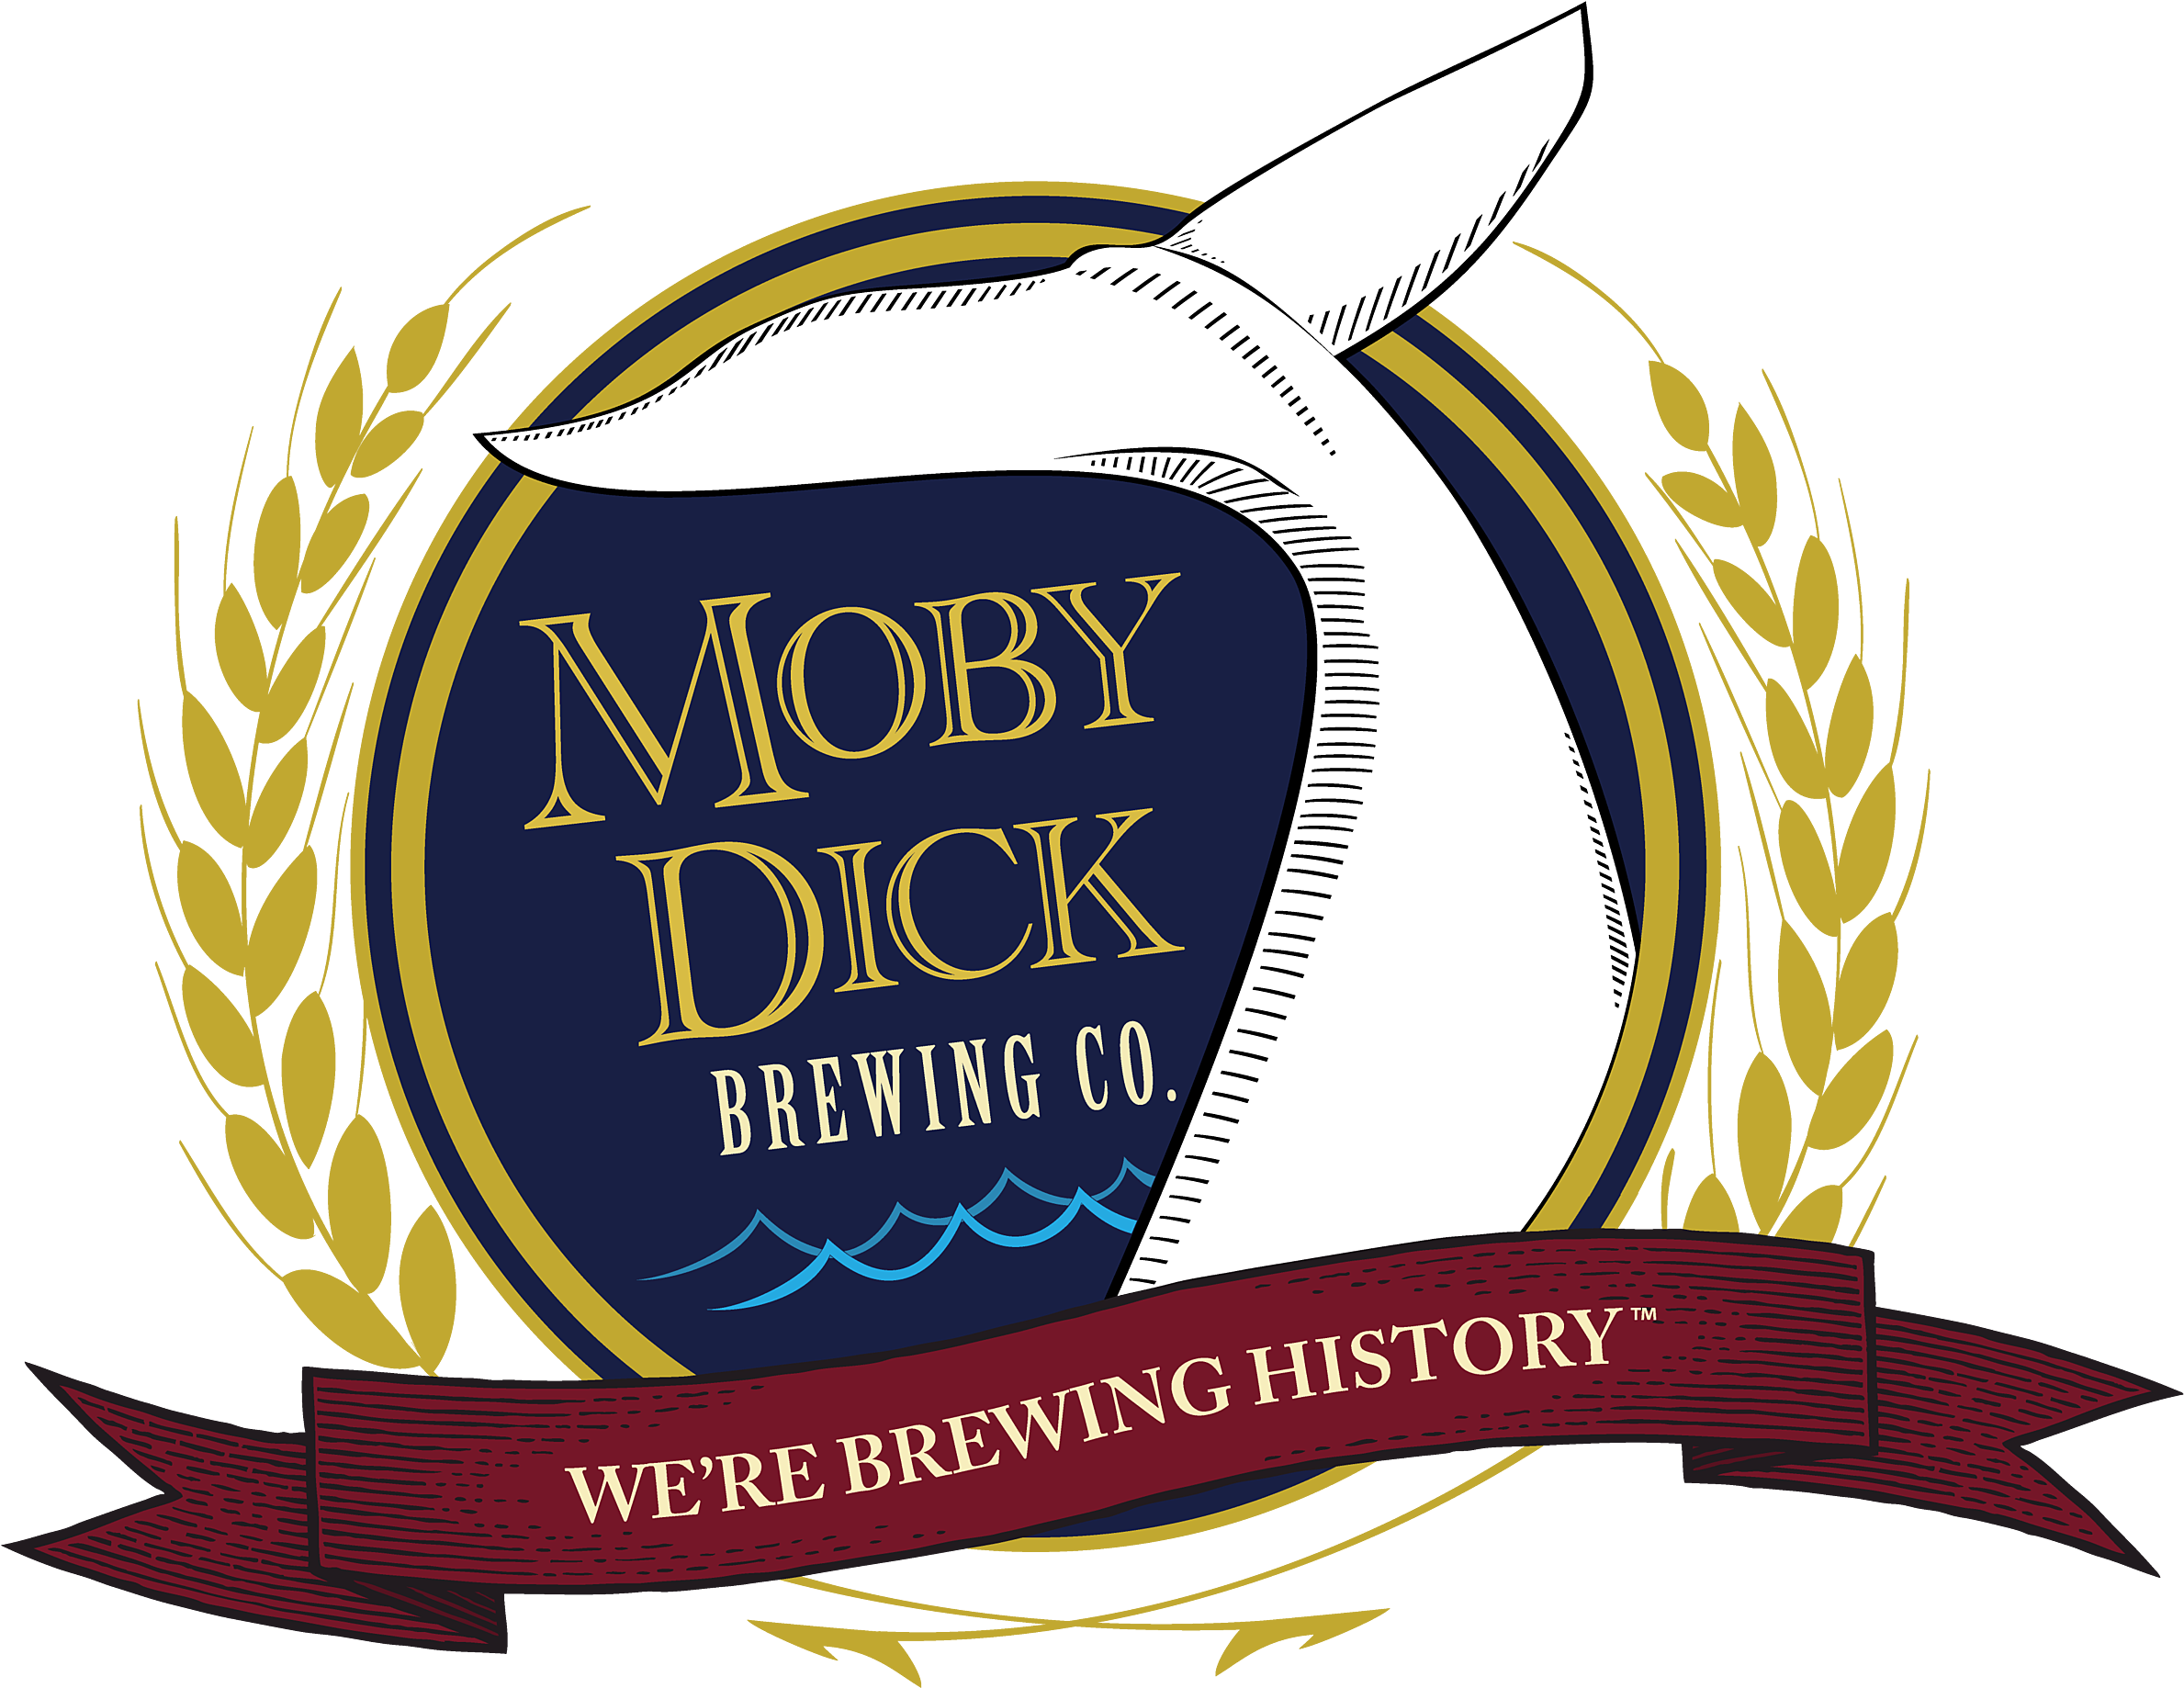 Moby dick brewery menu